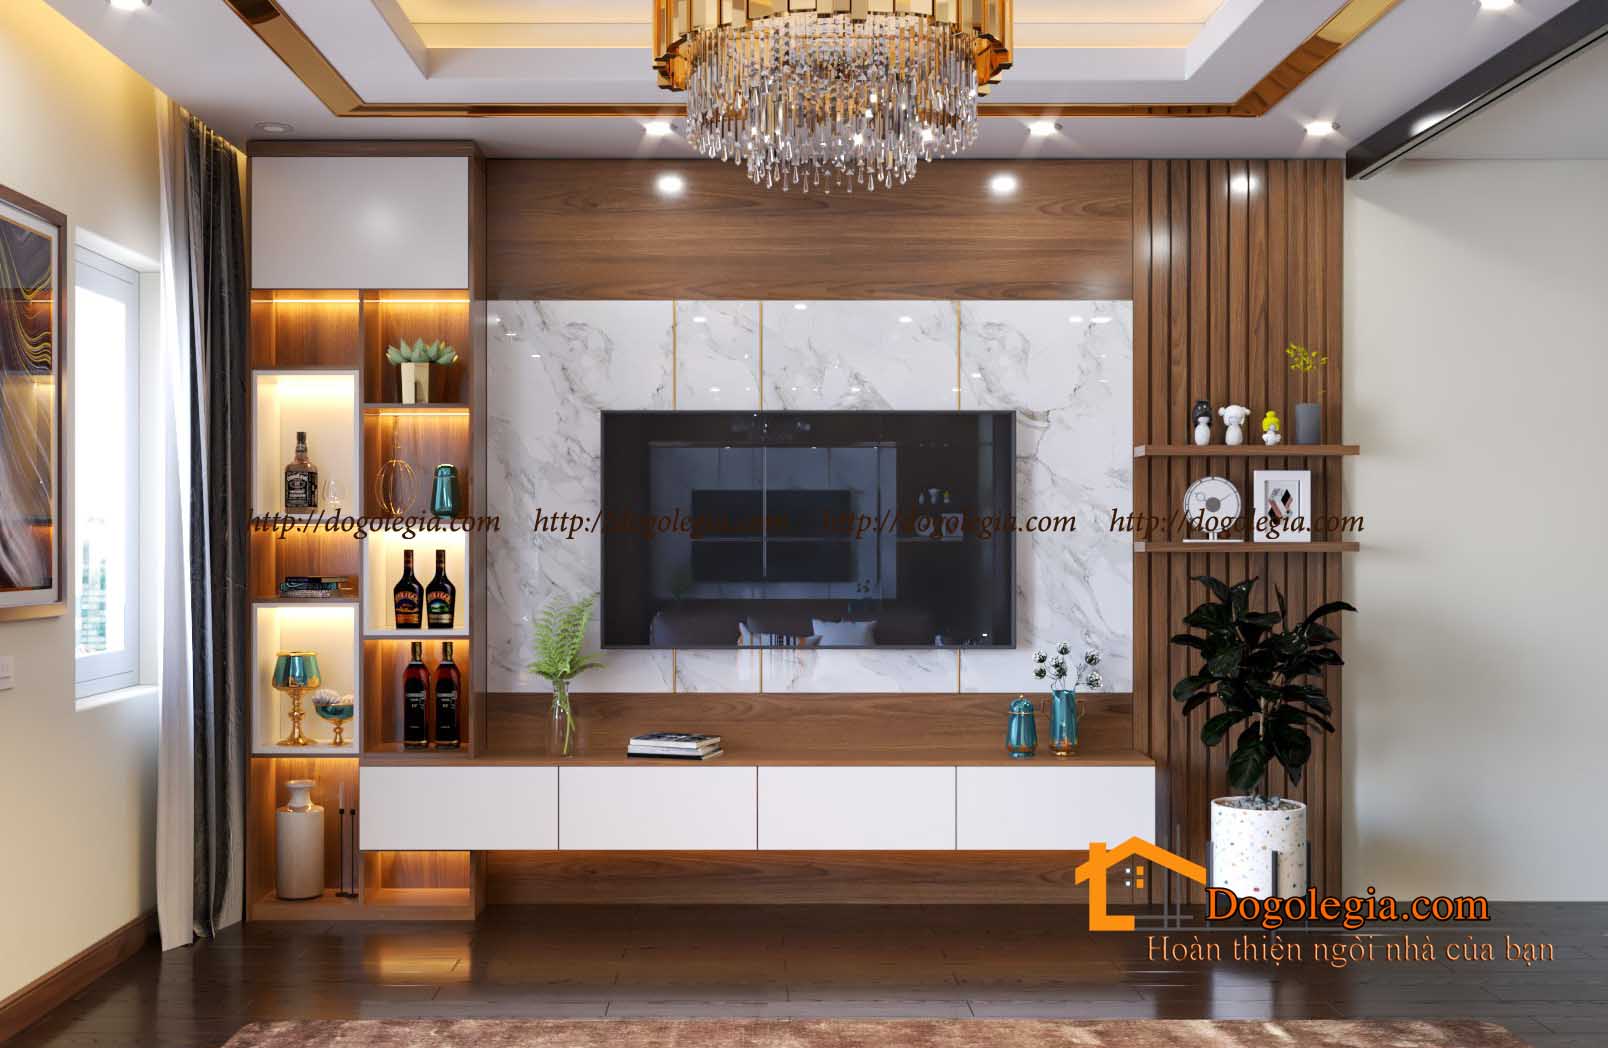 Trang trí kệ Tivi gỗ phòng khách: Trang trí kệ Tivi gỗ phòng khách mang lại cho bạn một chút sự mới mẻ và phong cách cho không gian sống. Với các tùy chọn về cách bố trí và trang trí đồ nội thất, hãy tận dụng sức sáng tạo của mình và biến món đồ nội thất này thành một tác phẩm nghệ thuật đầy ấn tượng.